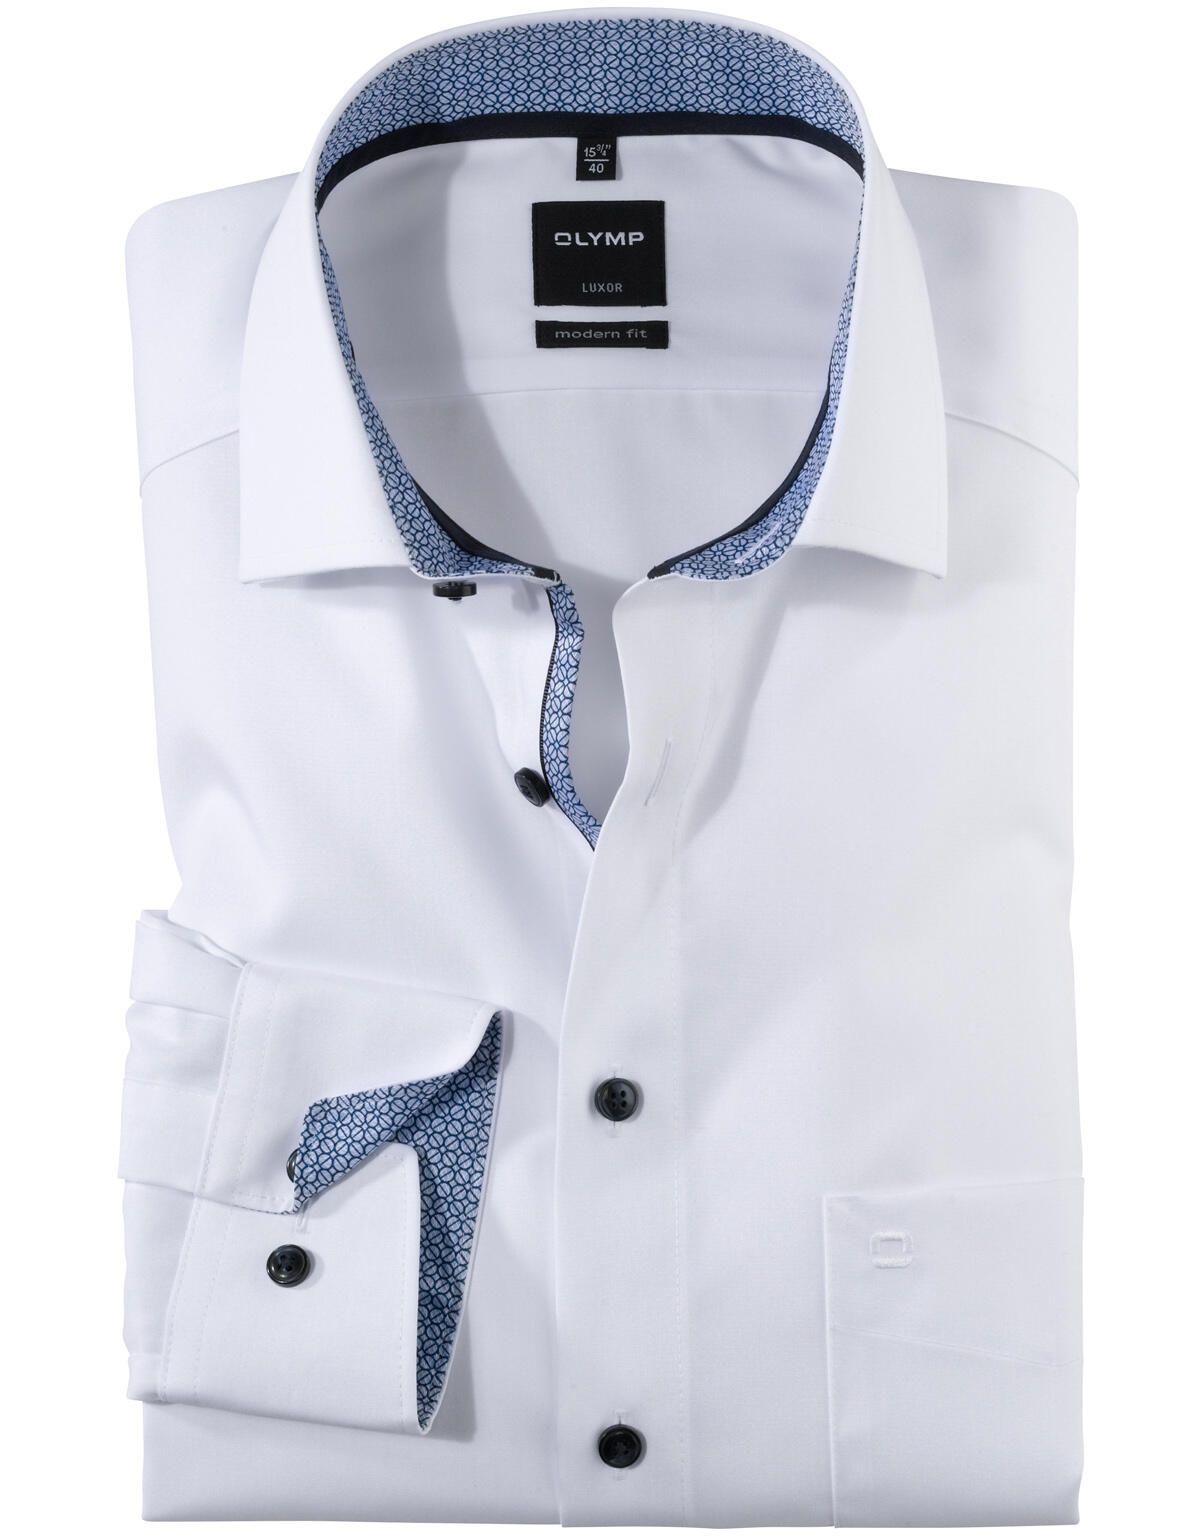 Белая рубашка мужская OLYMP Luxor Modern fit[Белый]